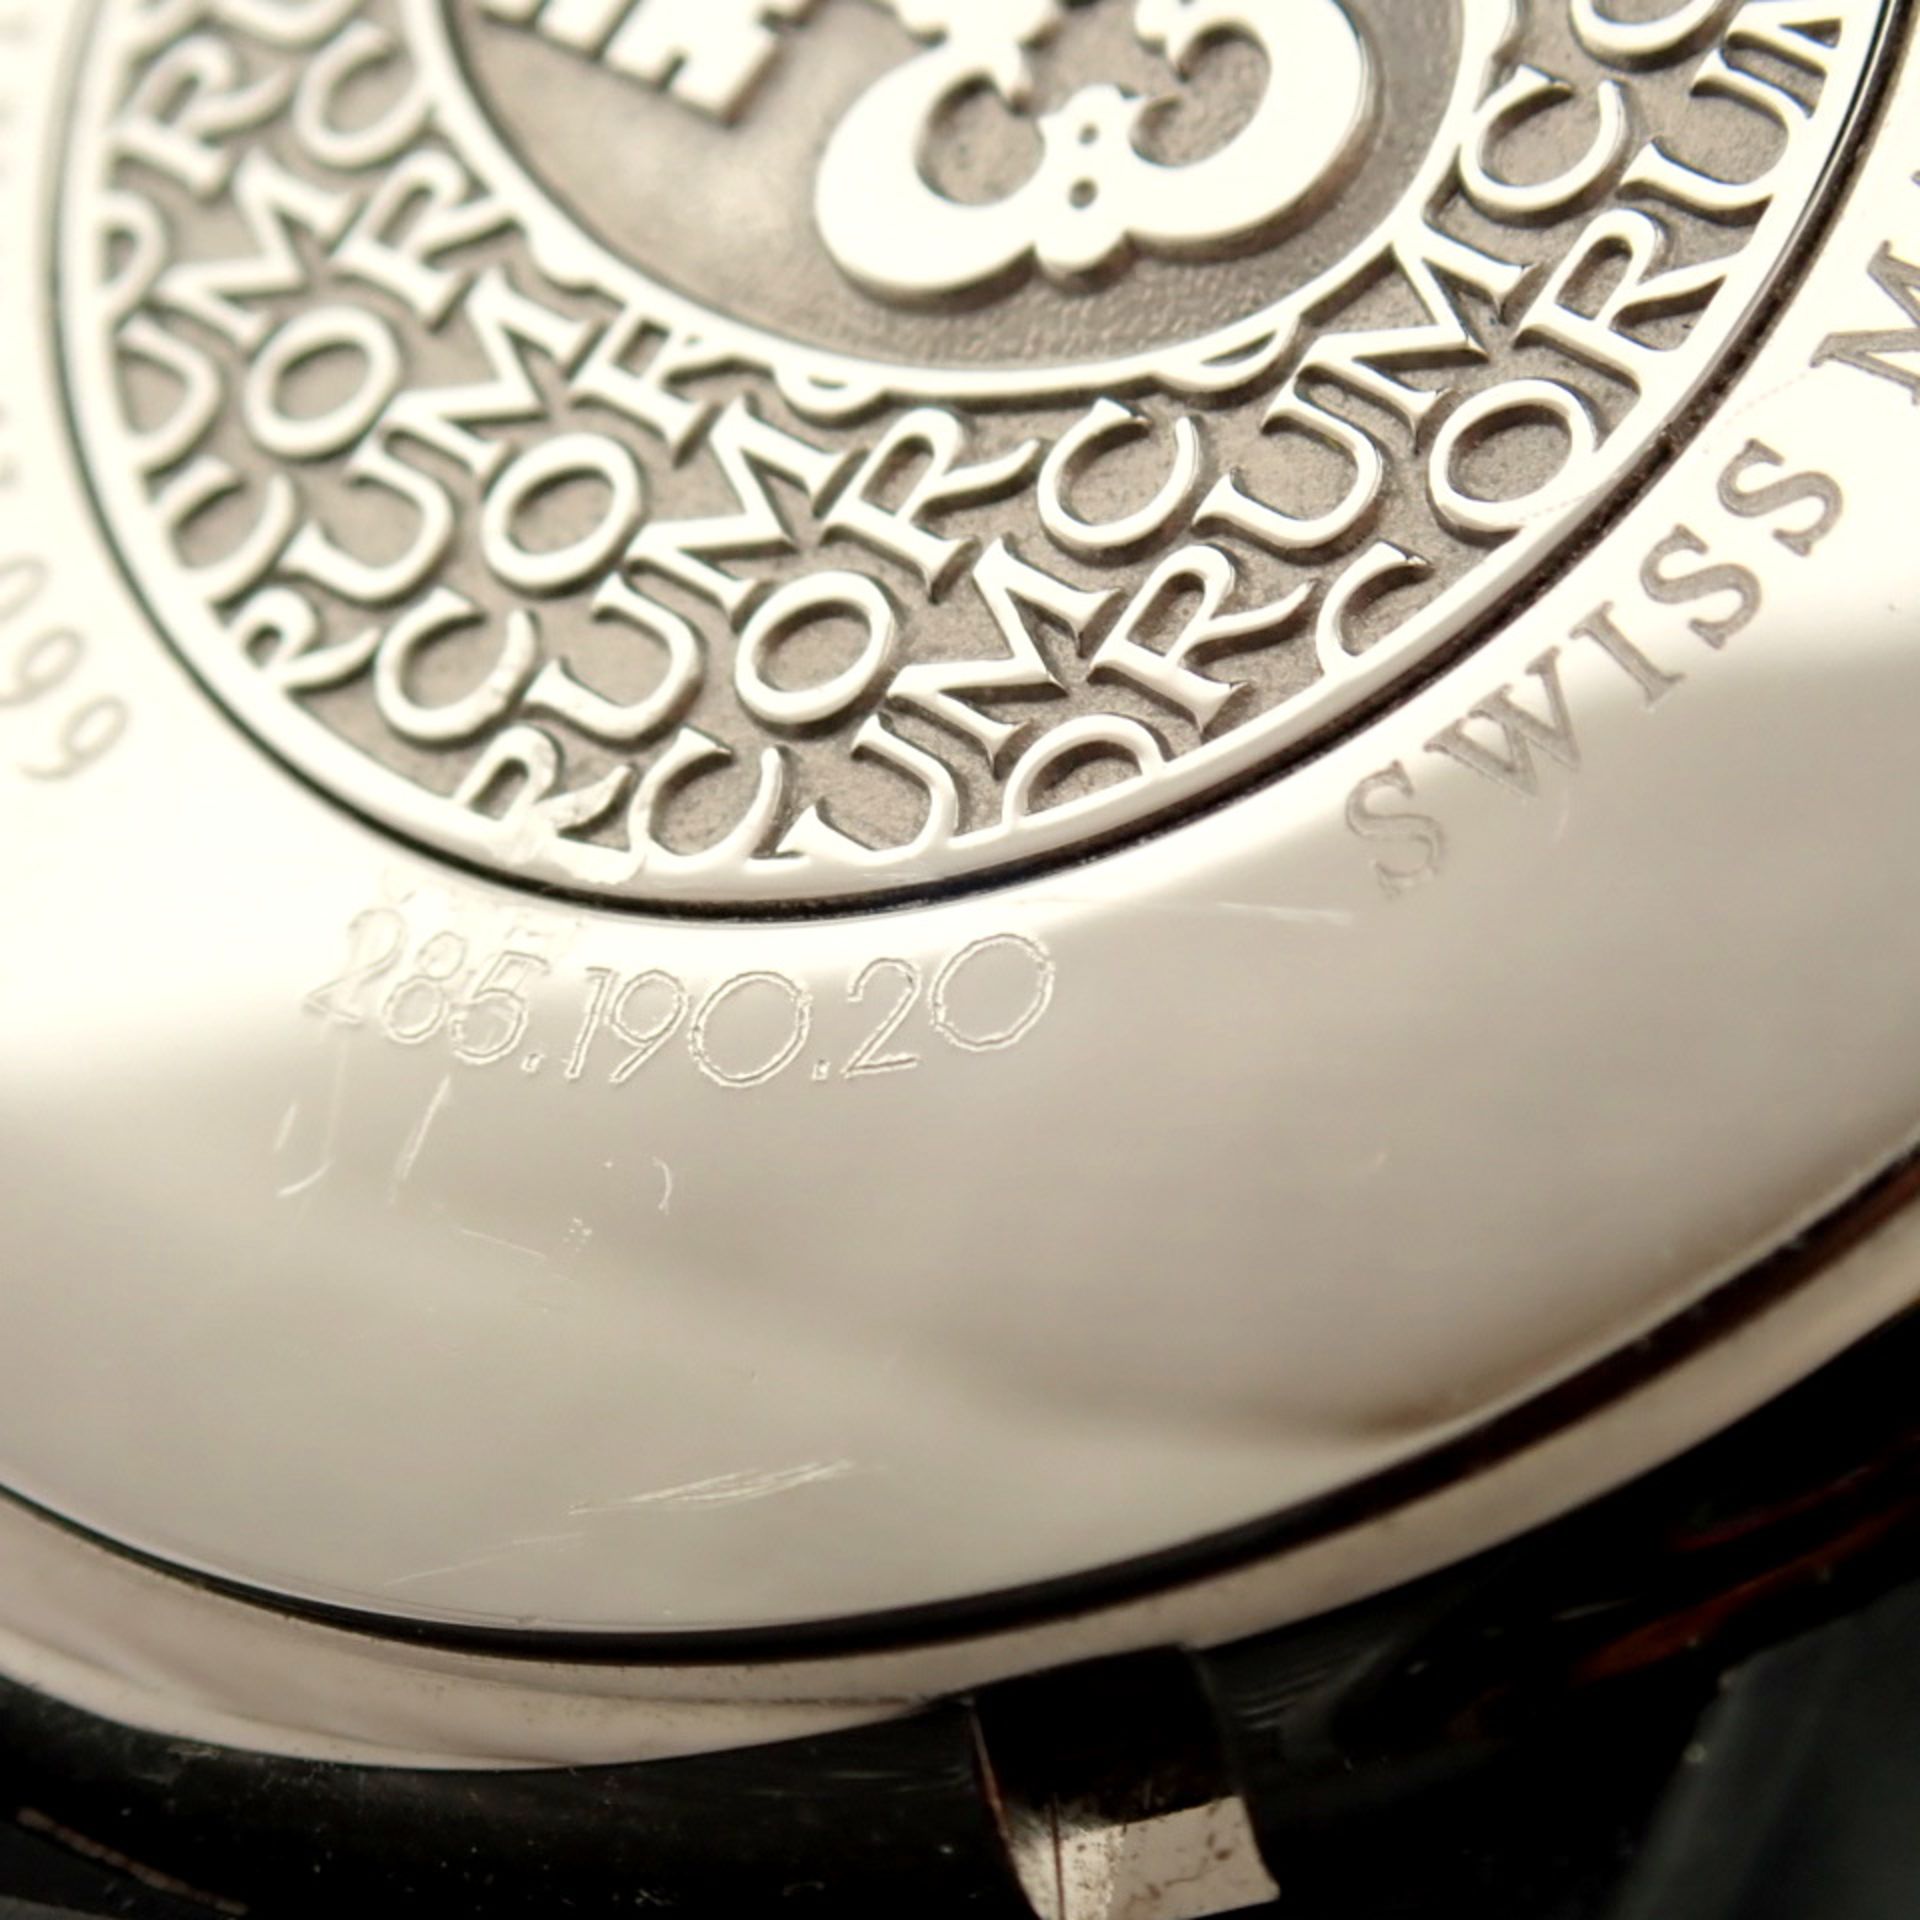 Corum / Midnight Chronograph Diver Taucher - Gentlmen's Steel Wrist Watch - Image 3 of 12